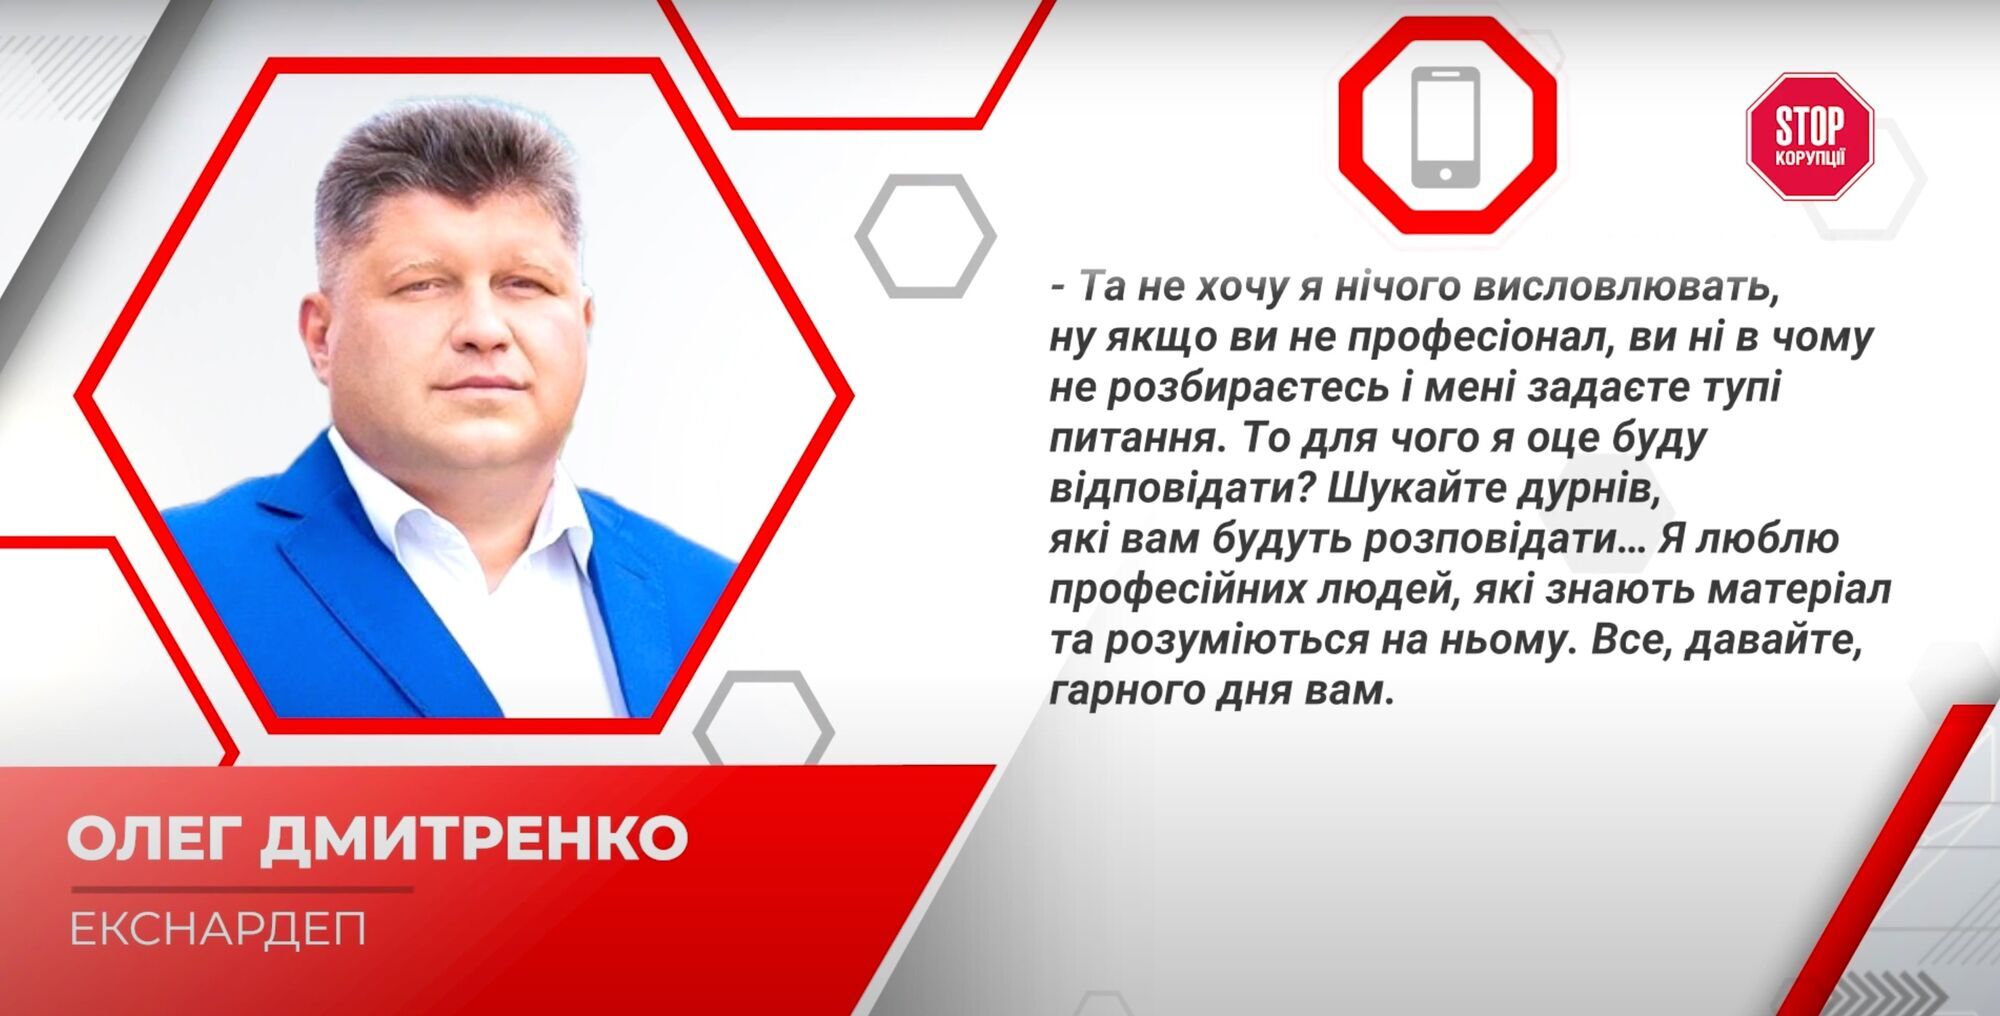 Дмитренко відмовився відповідати на питання журналістів